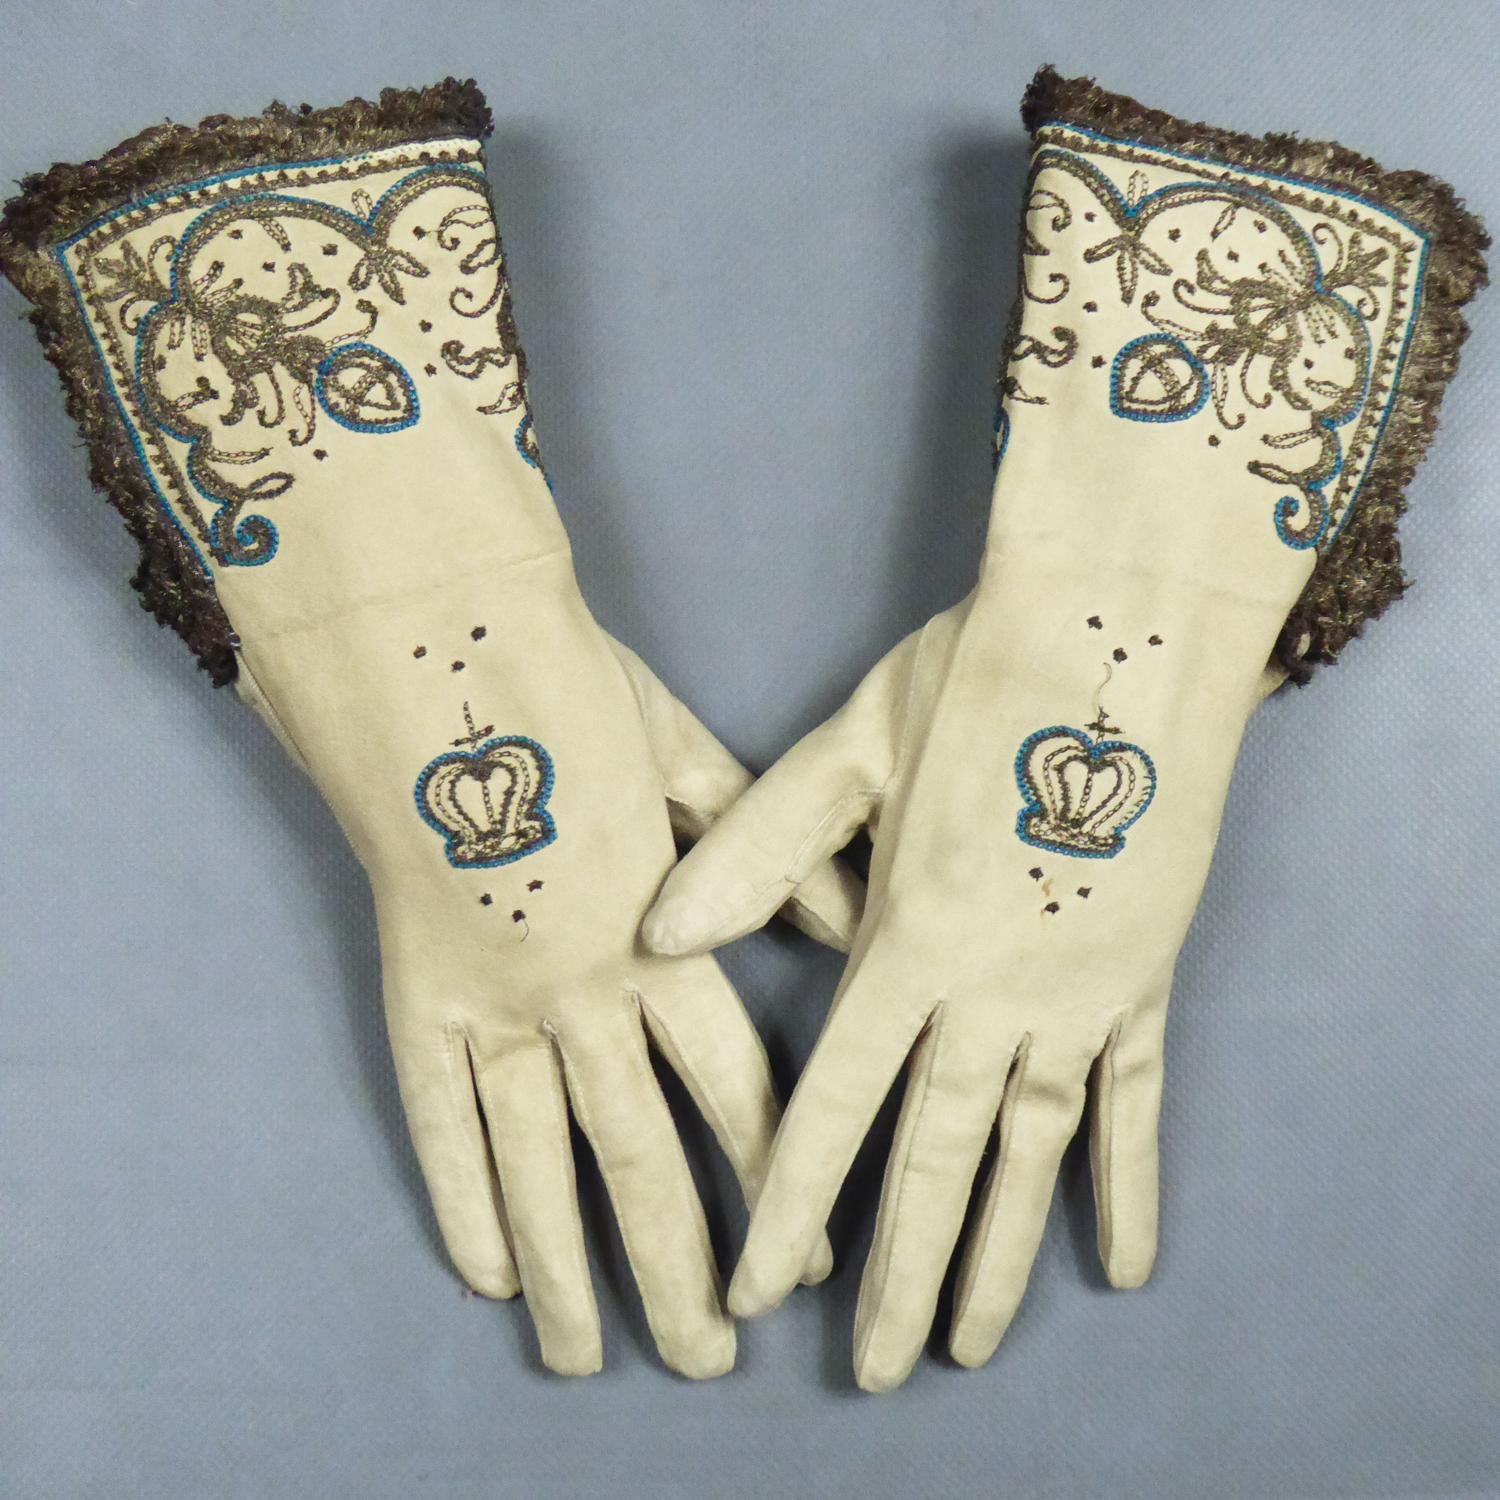 17th century gloves